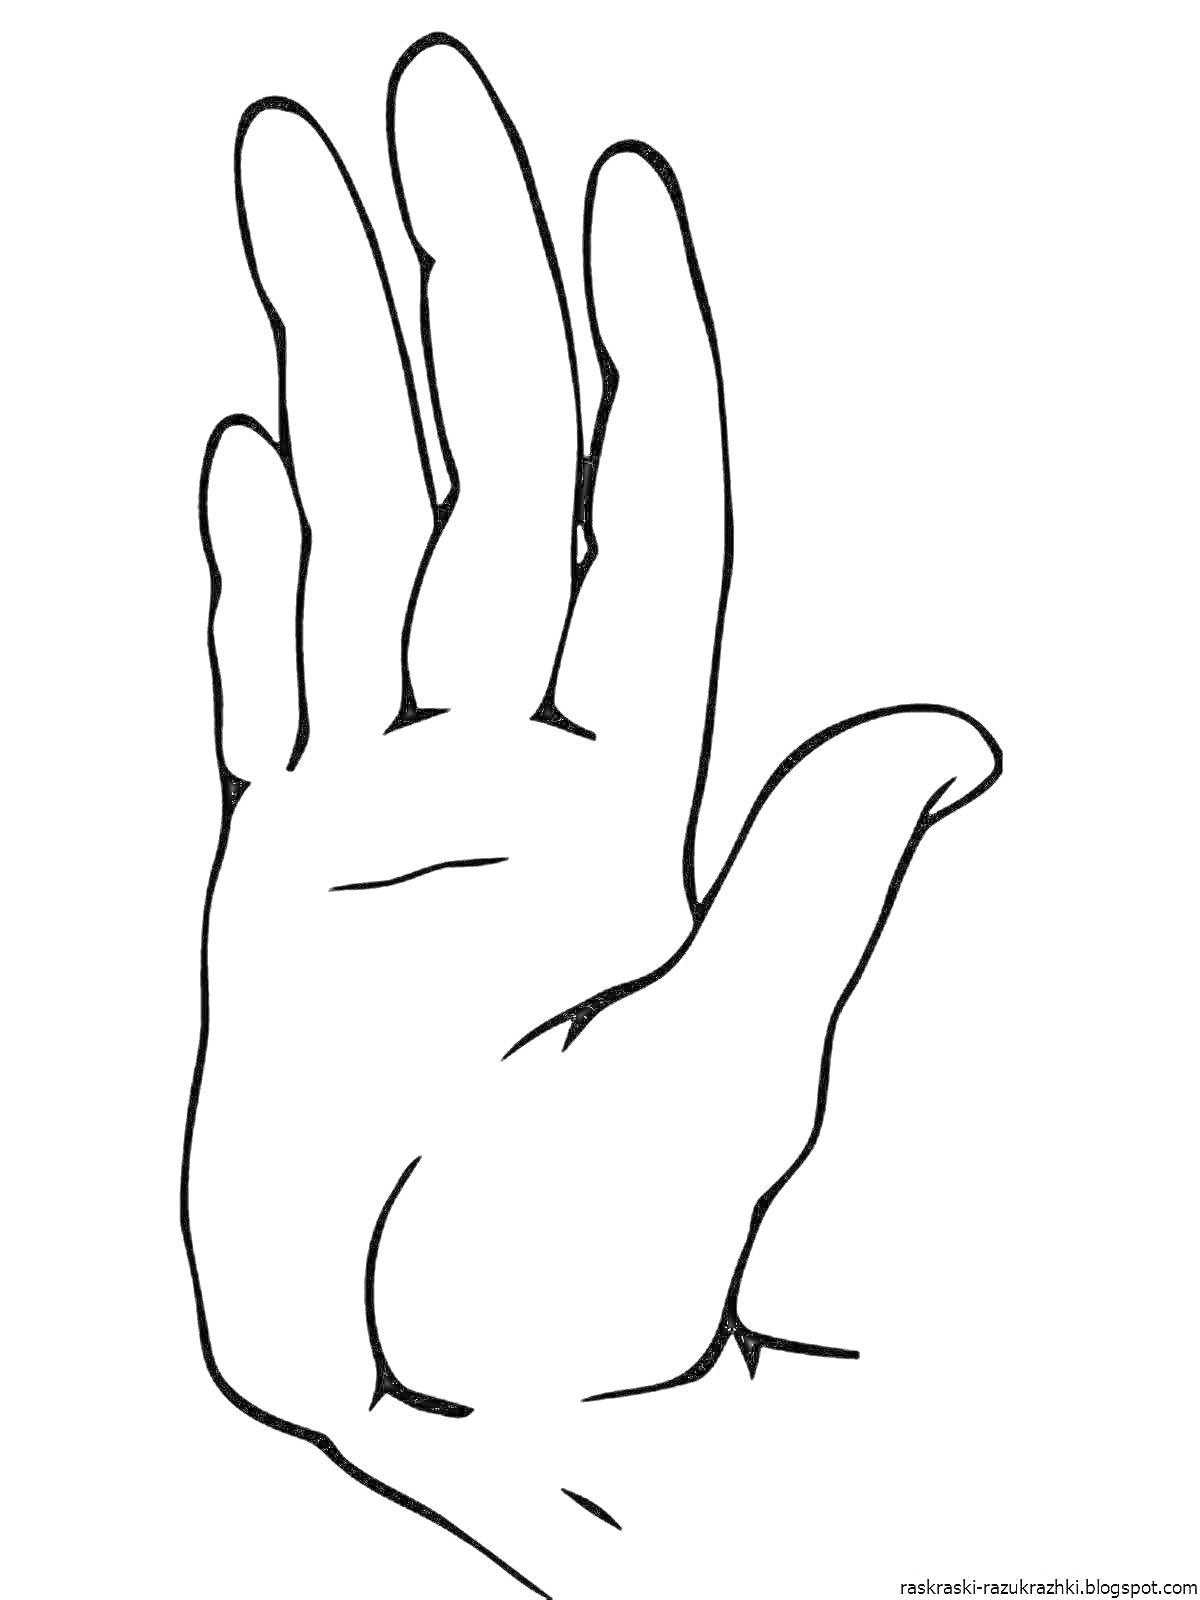 Раскраска контур руки с растопыренными пальцами